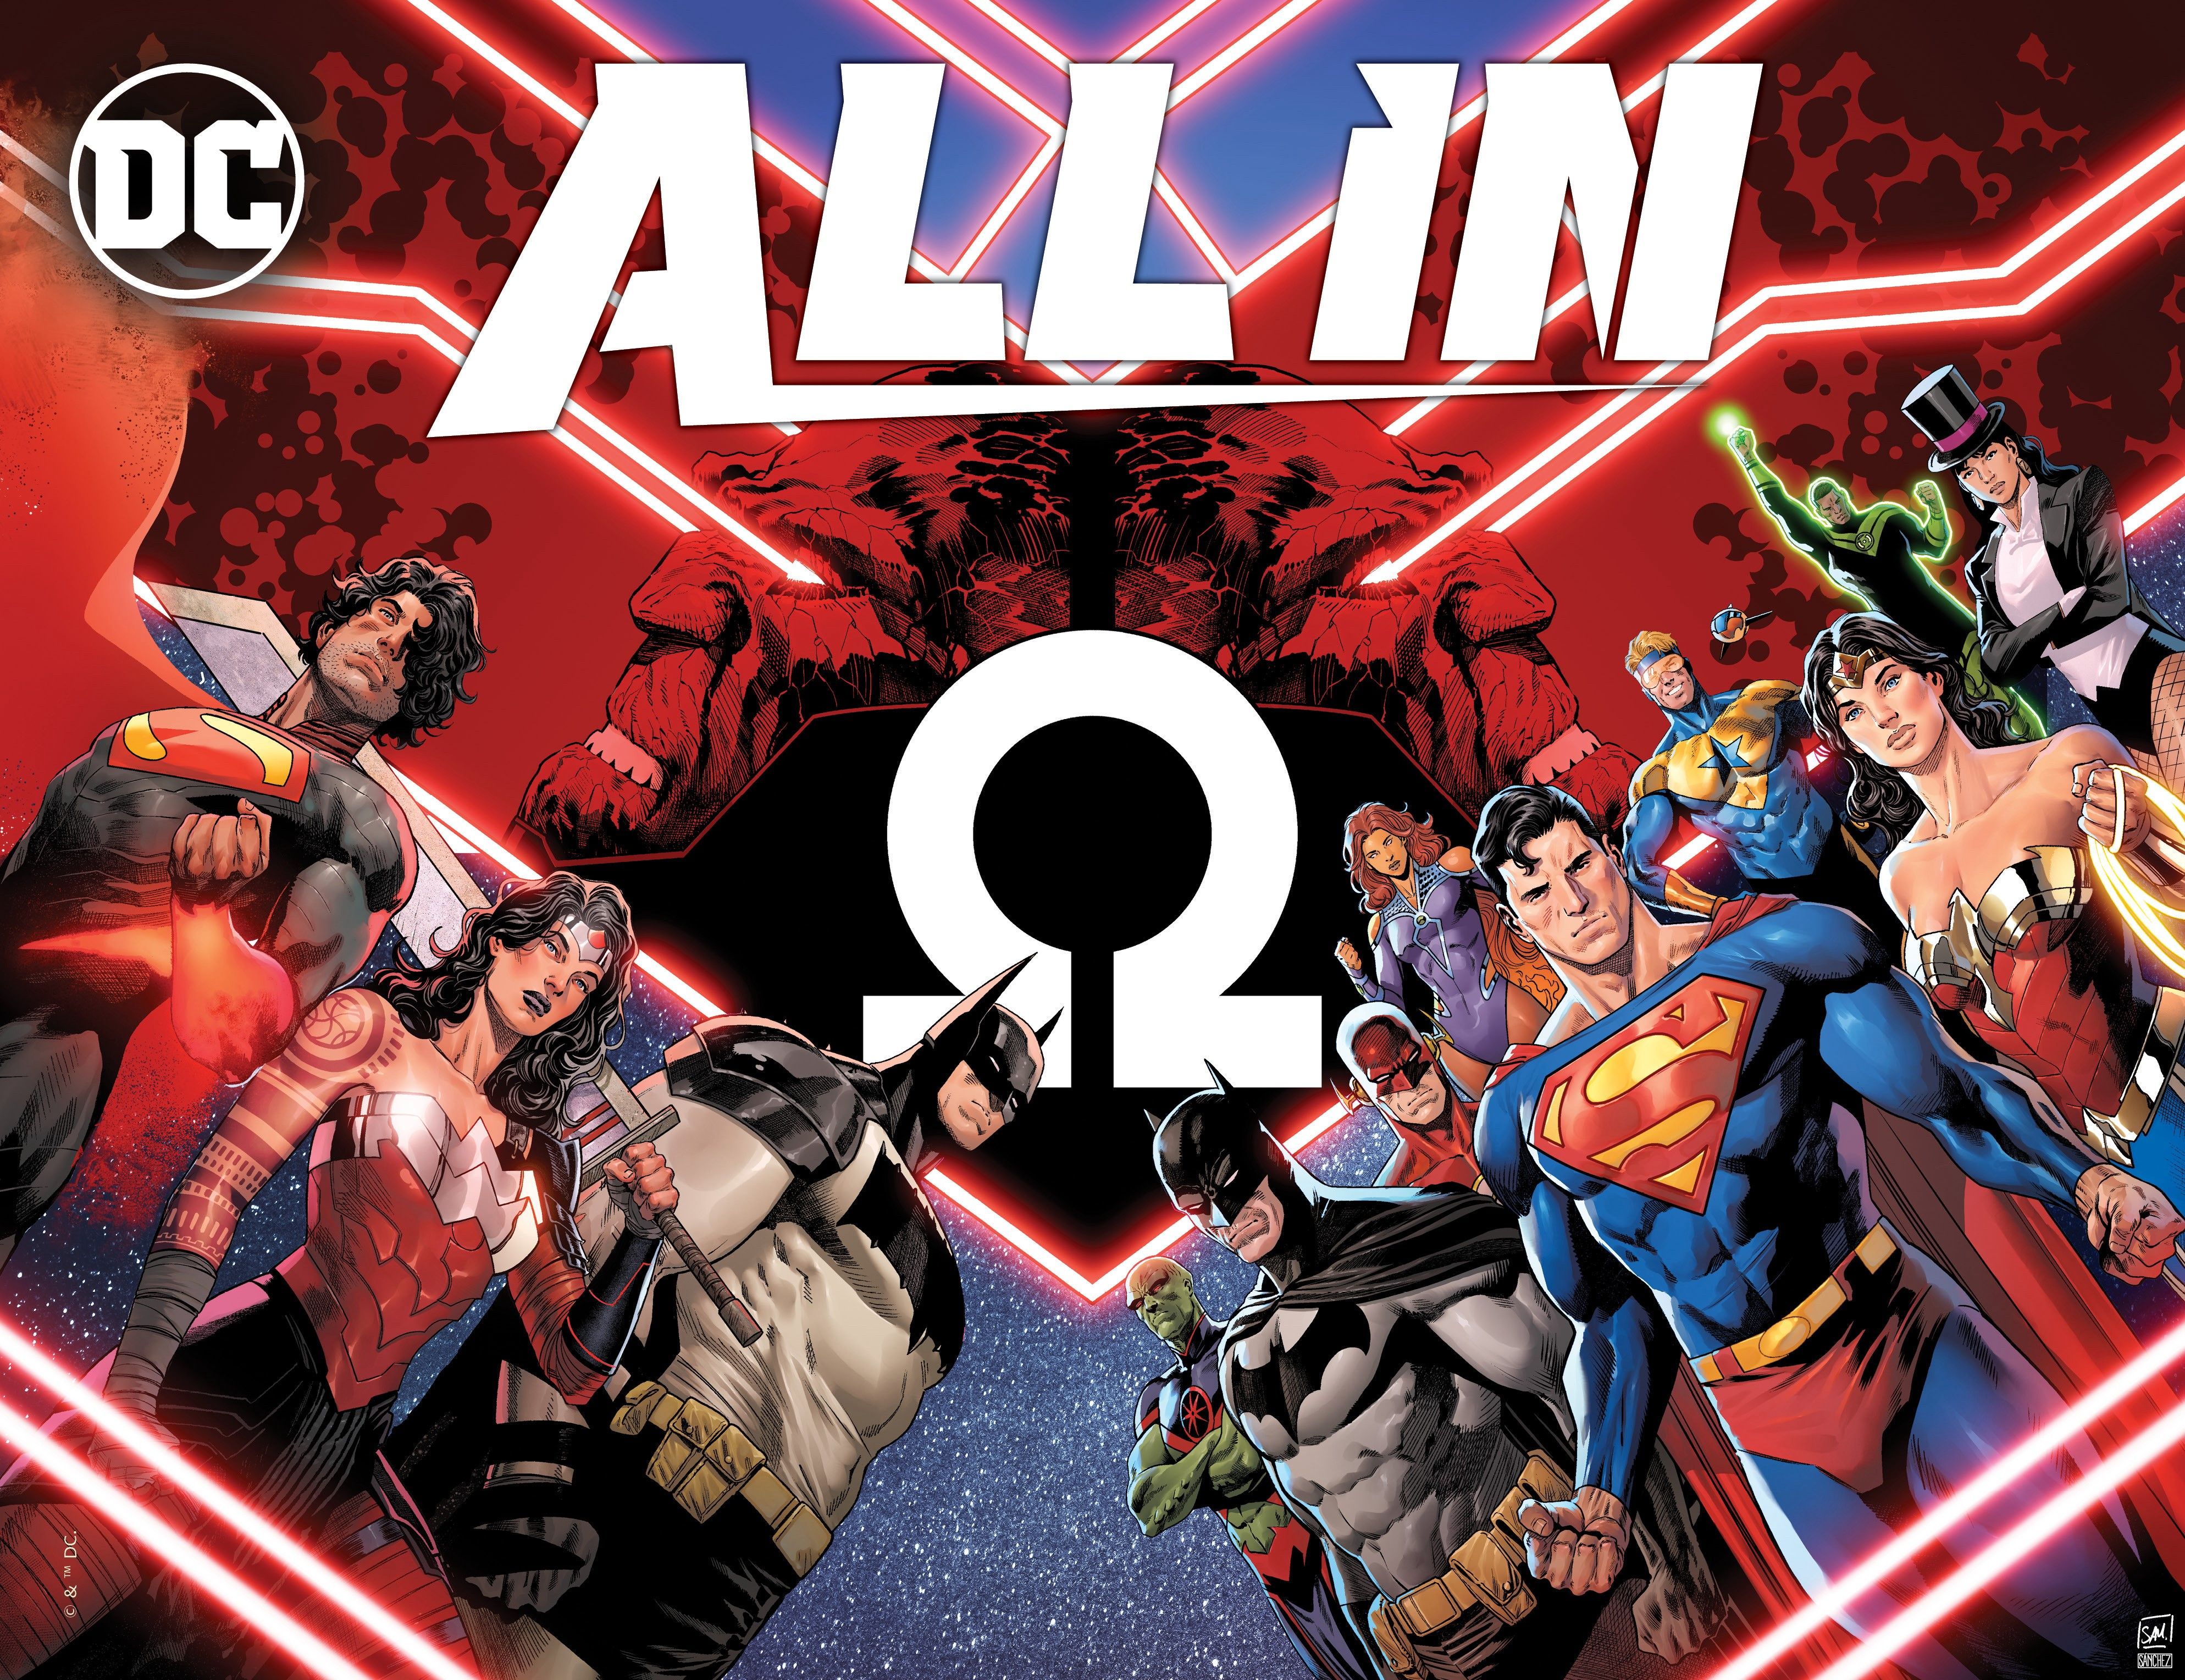 Arte de história em quadrinhos: uma imagem promocional para DC All In apresentando a Liga da Justiça e a Trindade do Universo Absoluto.